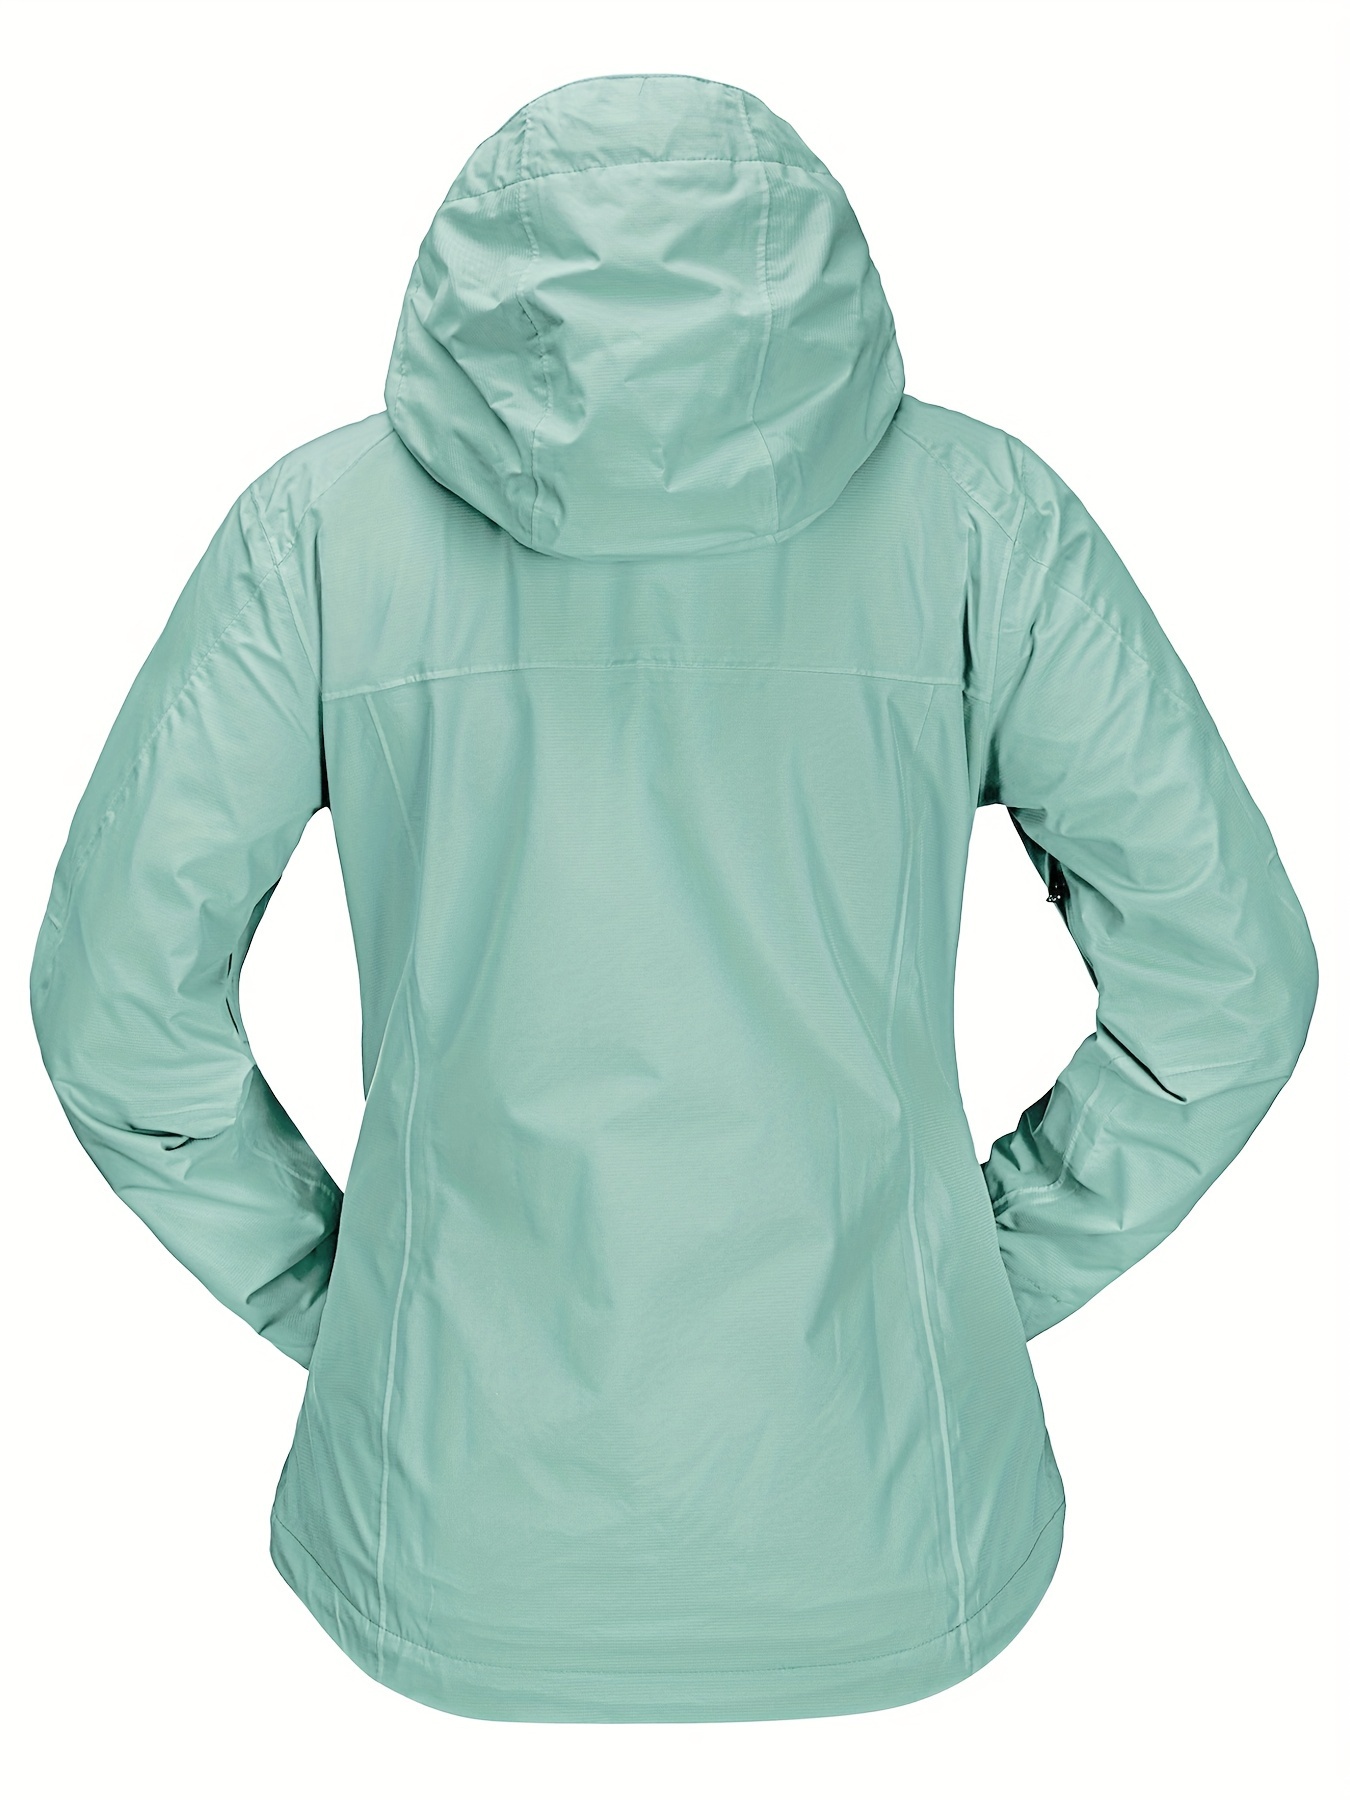 YYDGH Rain Jacket for Women Snap Buttons Zip Up Elastic WaistAnorak Coat  Lightweight Waterproof Windbreaker Outdoor Active Travel Hiking Jackets  with